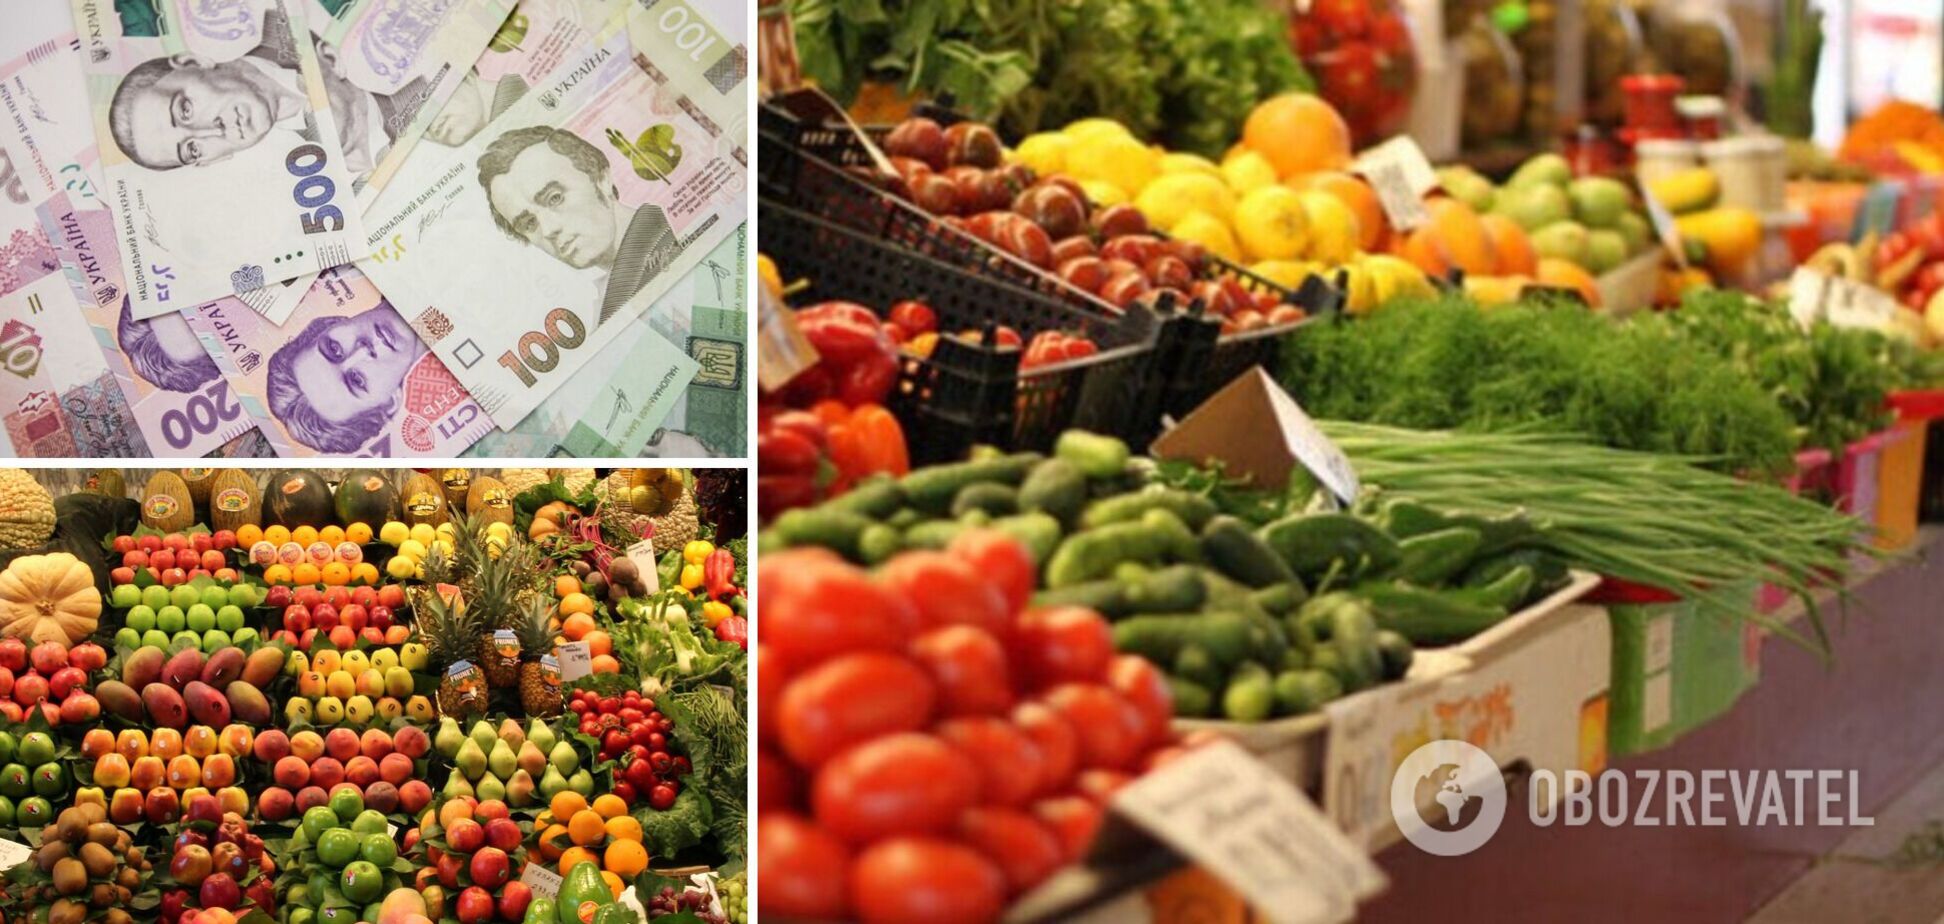 Овощи и фрукты подорожали на 20%, а зарплаты упали на 30%